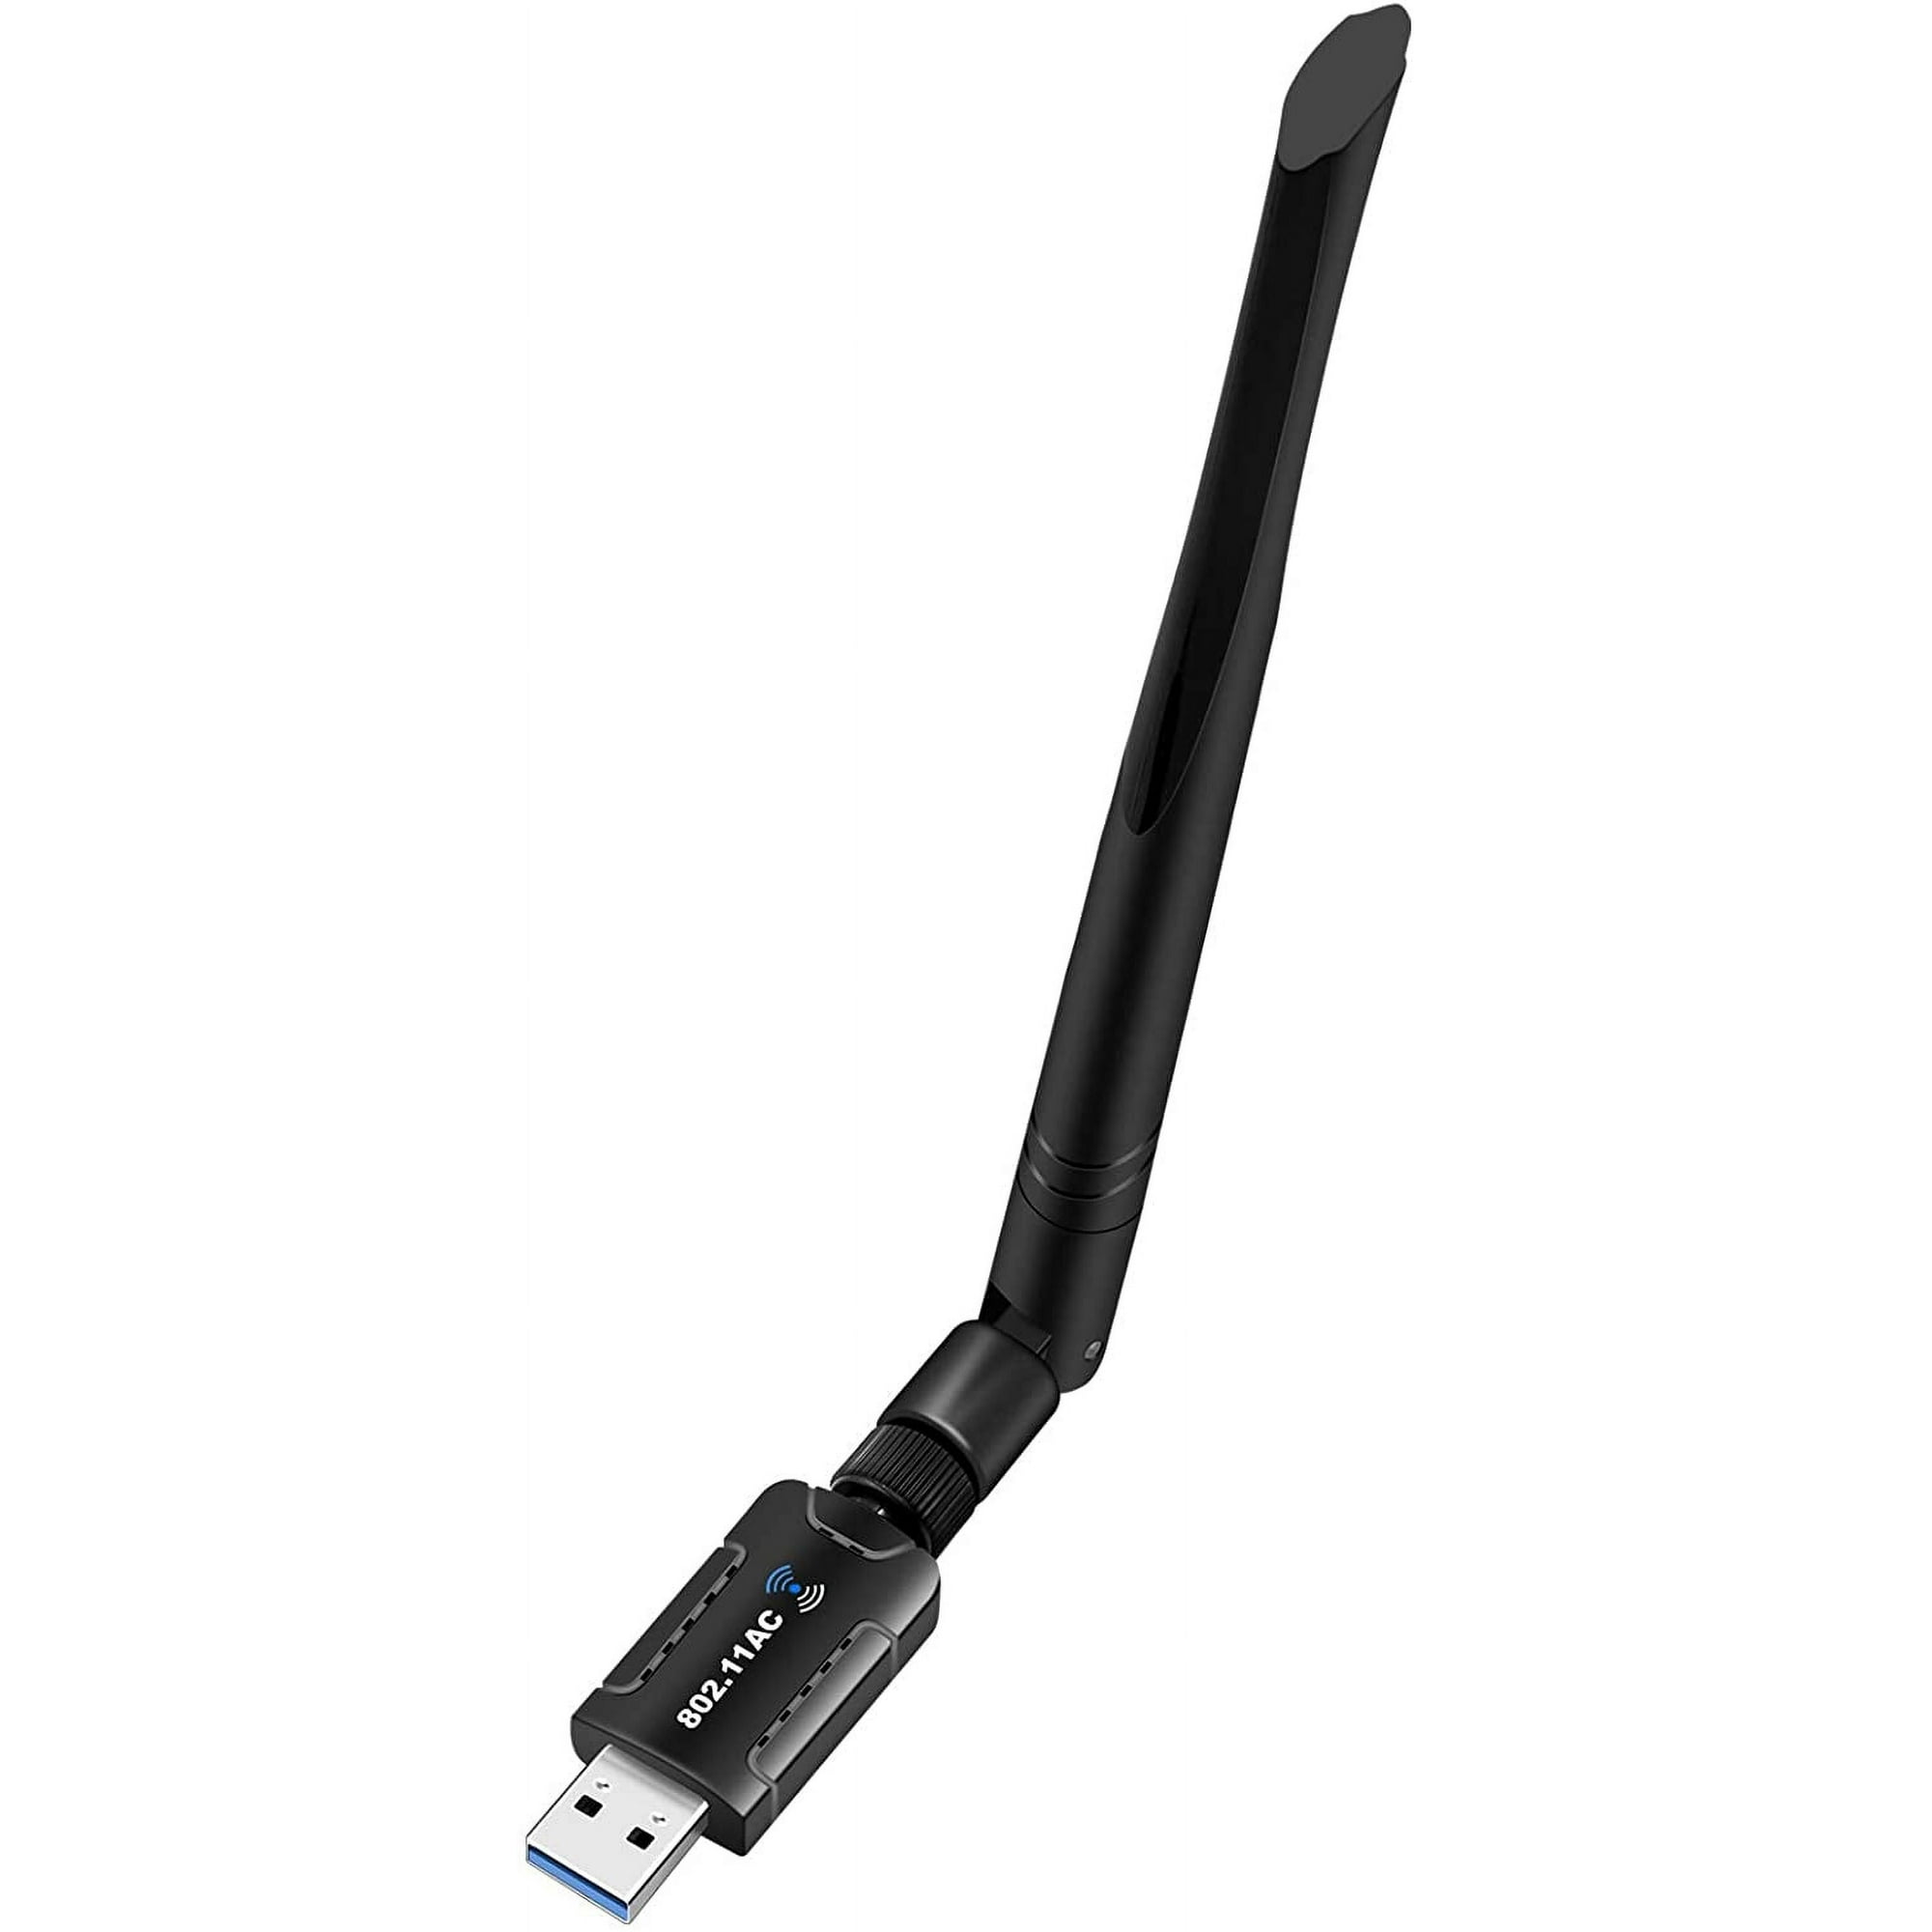 Adaptador WiFi USB de 1200 Mbps para PC, adaptador de red inalámbrico  Techkey Mini USB 3.0 WiFi 802.11 ac con doble banda 2.4GHz/300Mbps,  5GHz/866Mbps